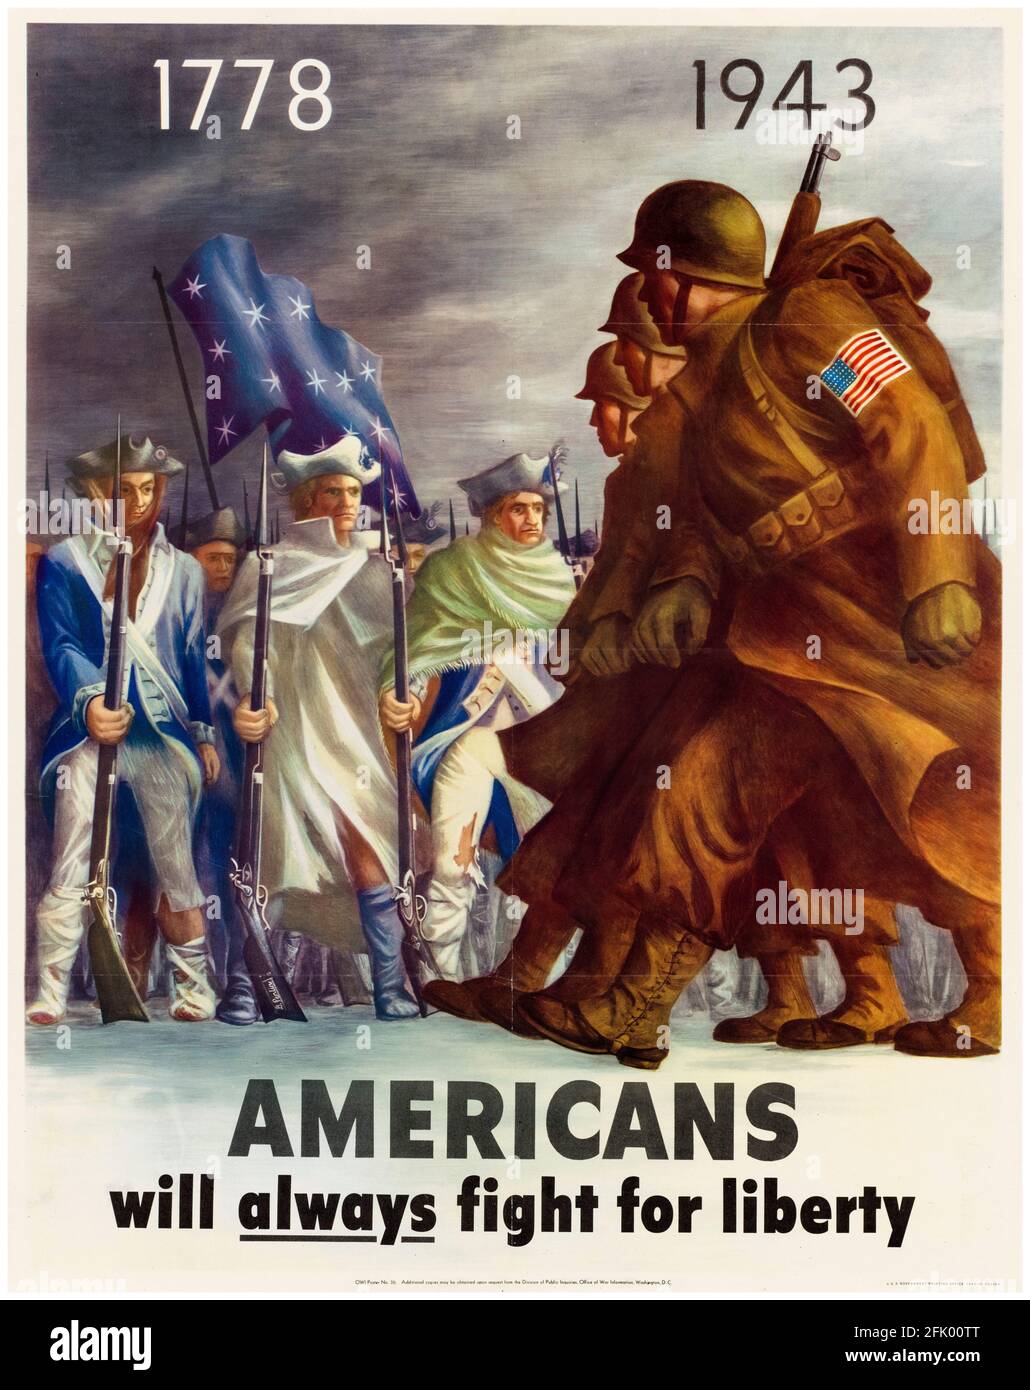 Les Américains se battront toujours pour la liberté (1778 – 1943), américain, affiche de motivation de la Seconde Guerre mondiale, 1941-1945 Banque D'Images